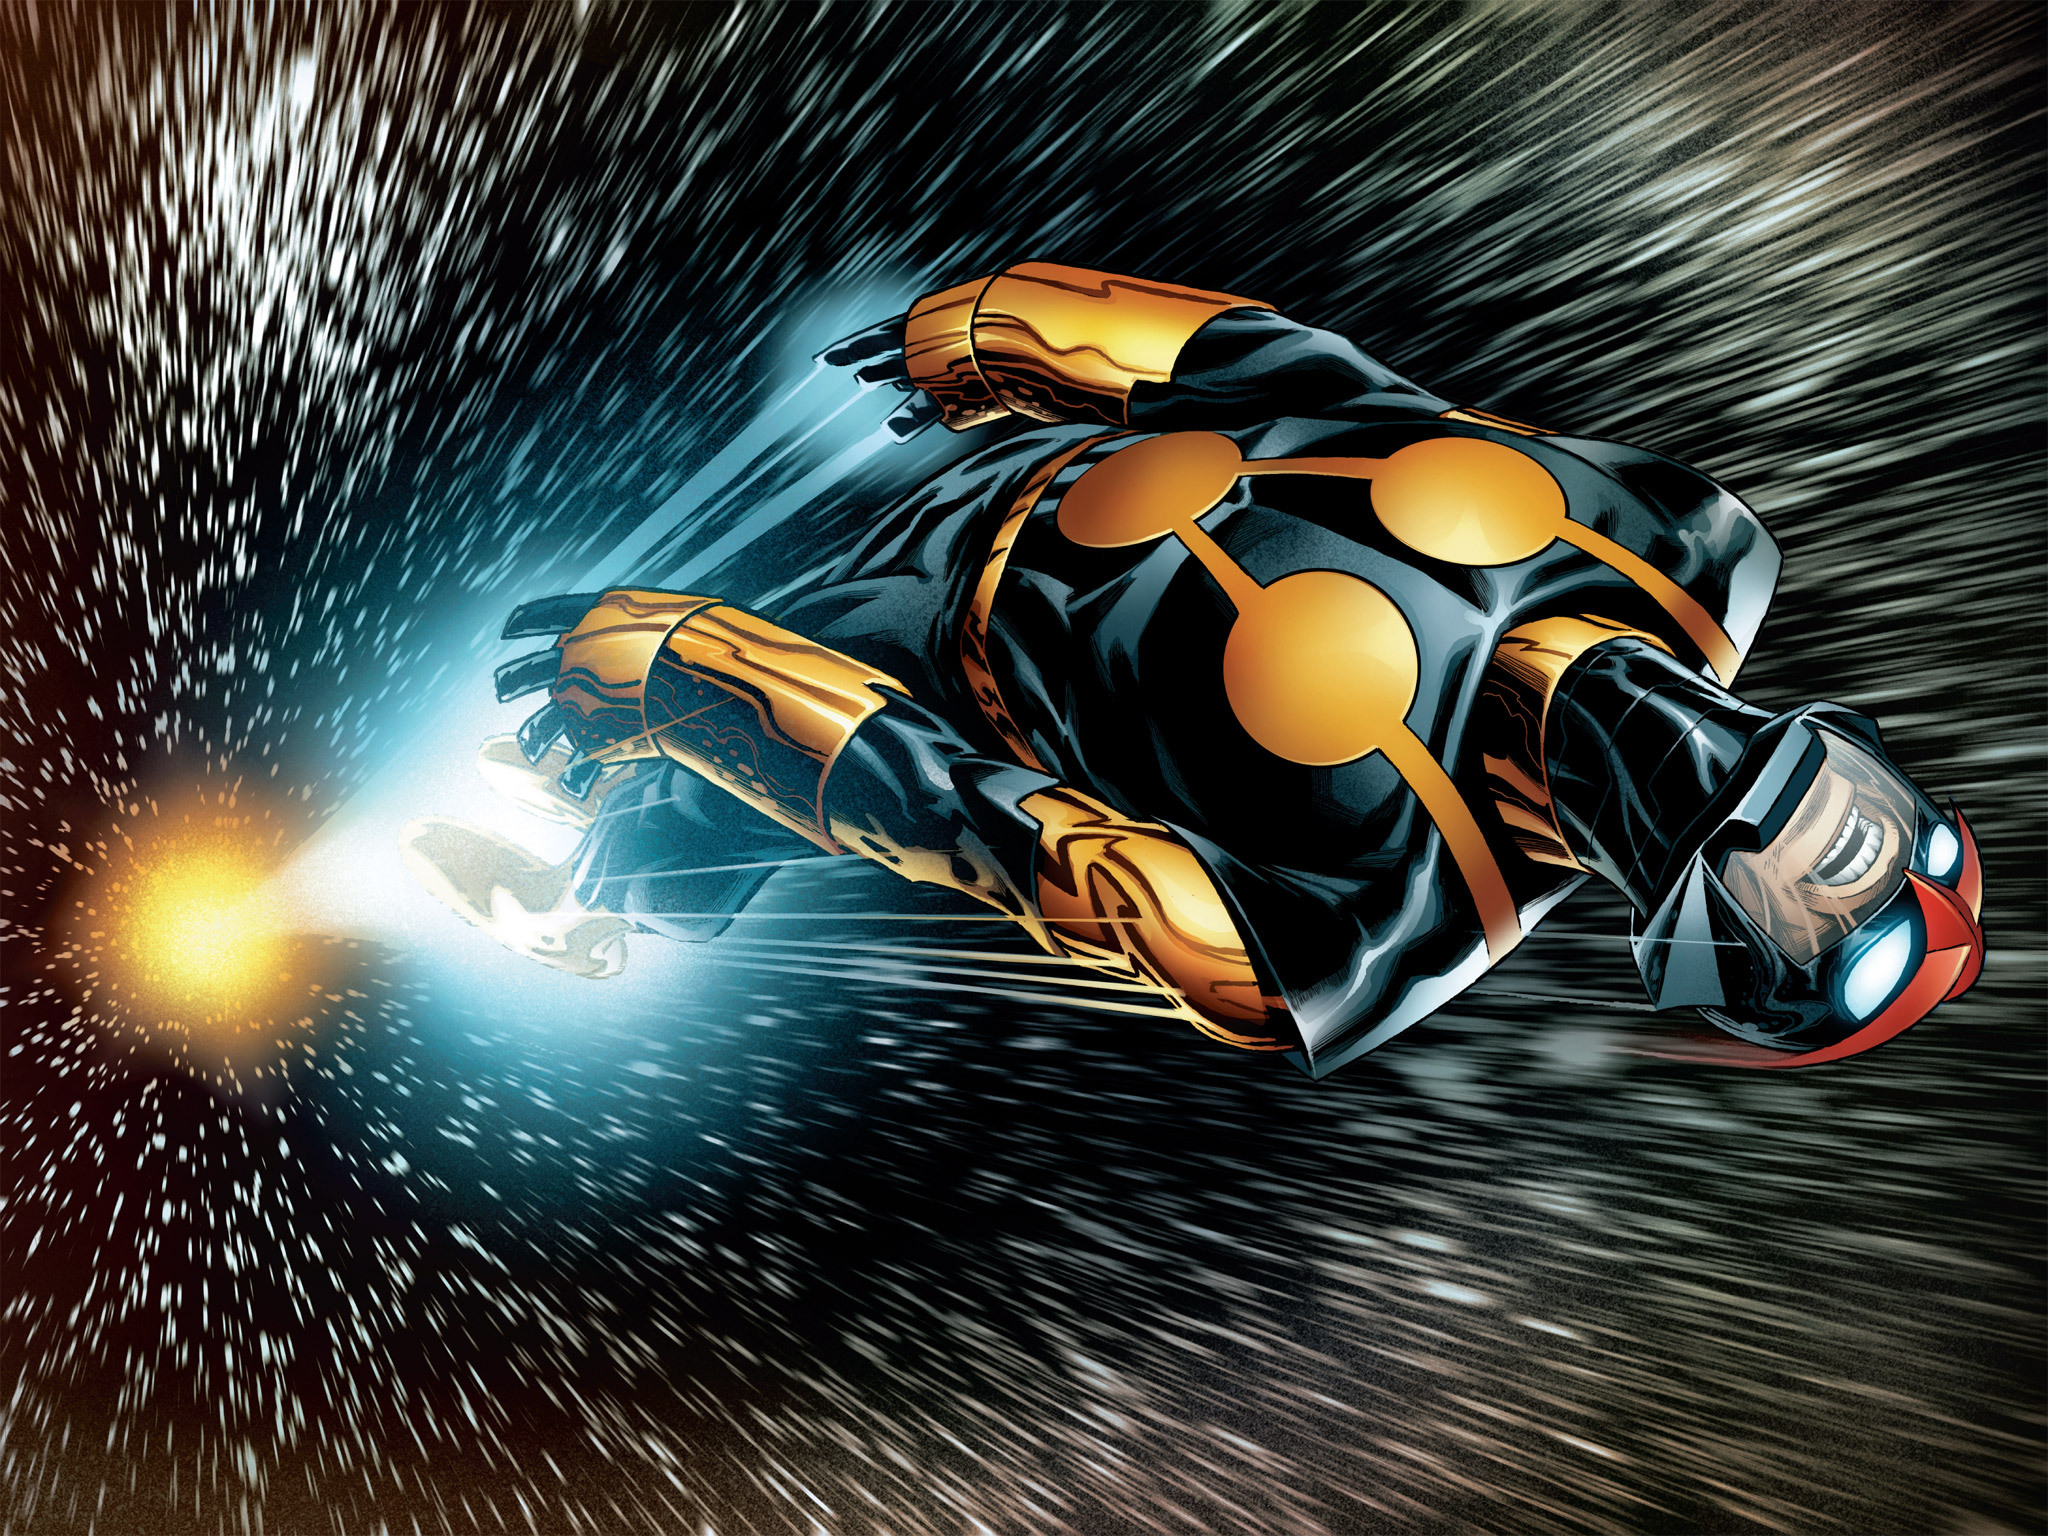 Read online Avengers vs. X-Men: Infinite comic -  Issue #1 - 6